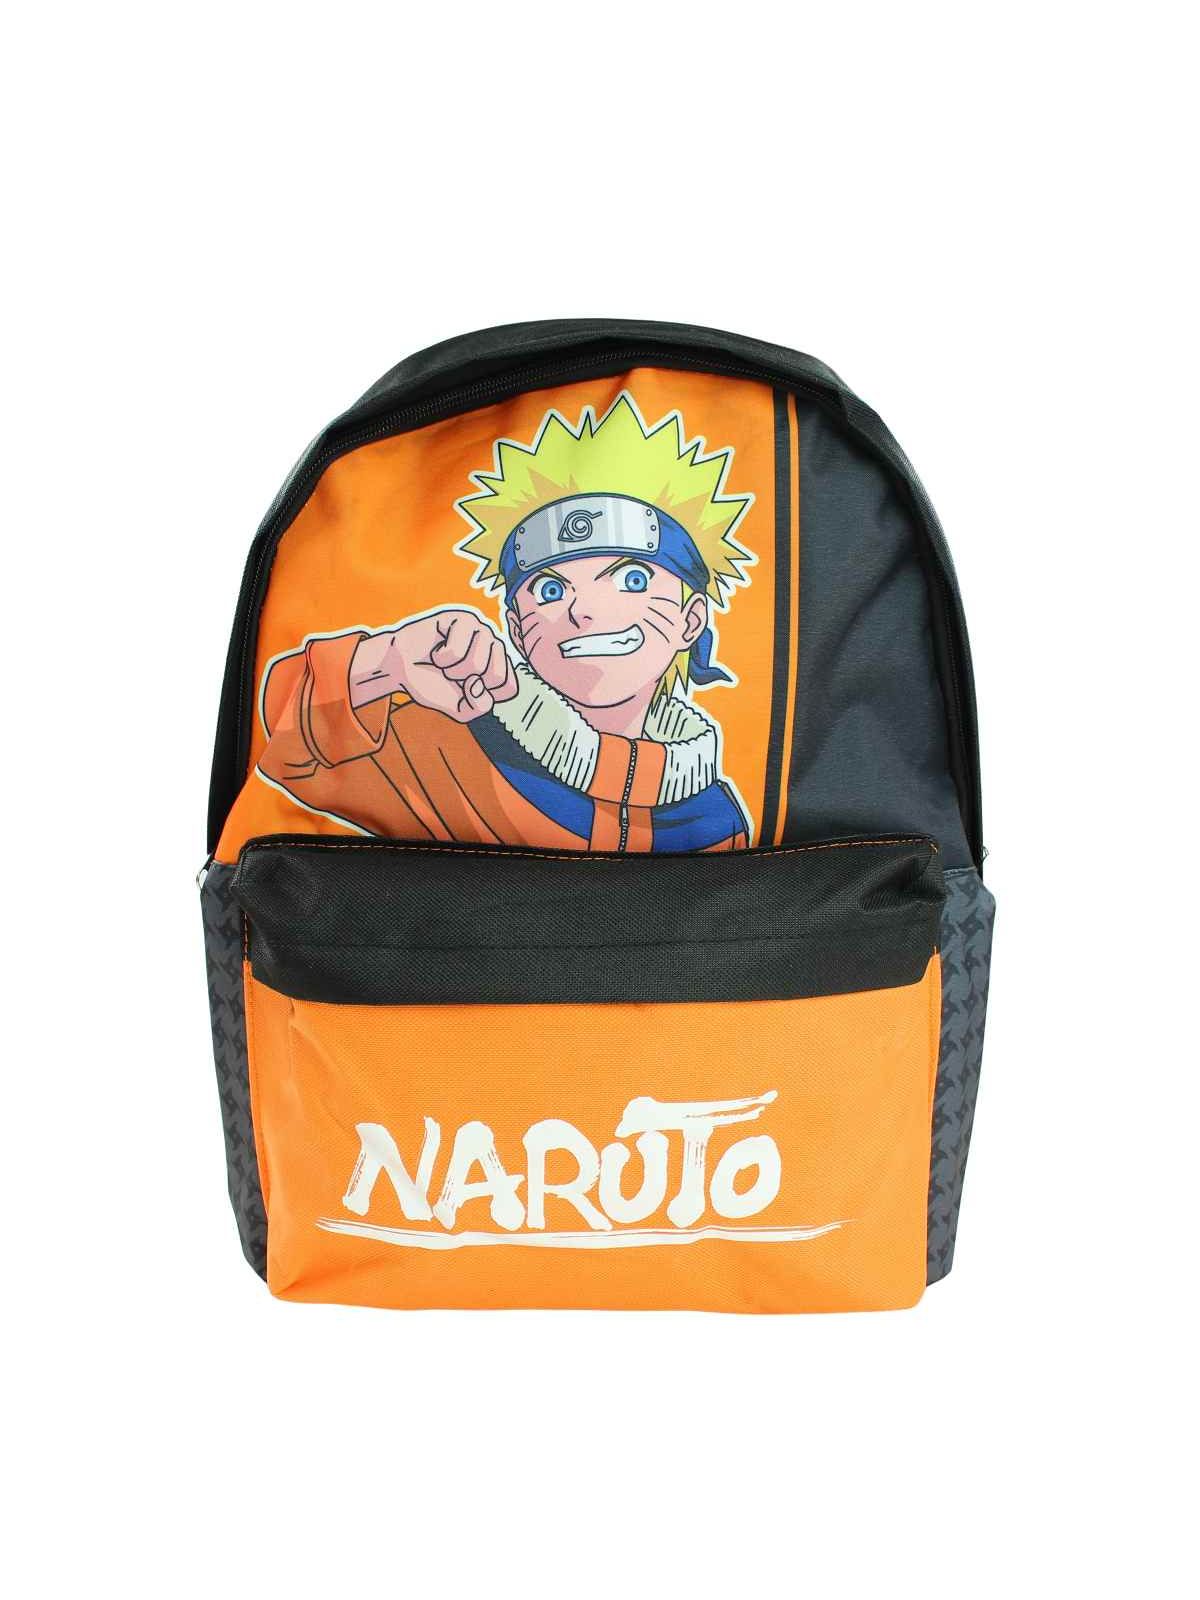 Naruto Rugzak 30x26x10